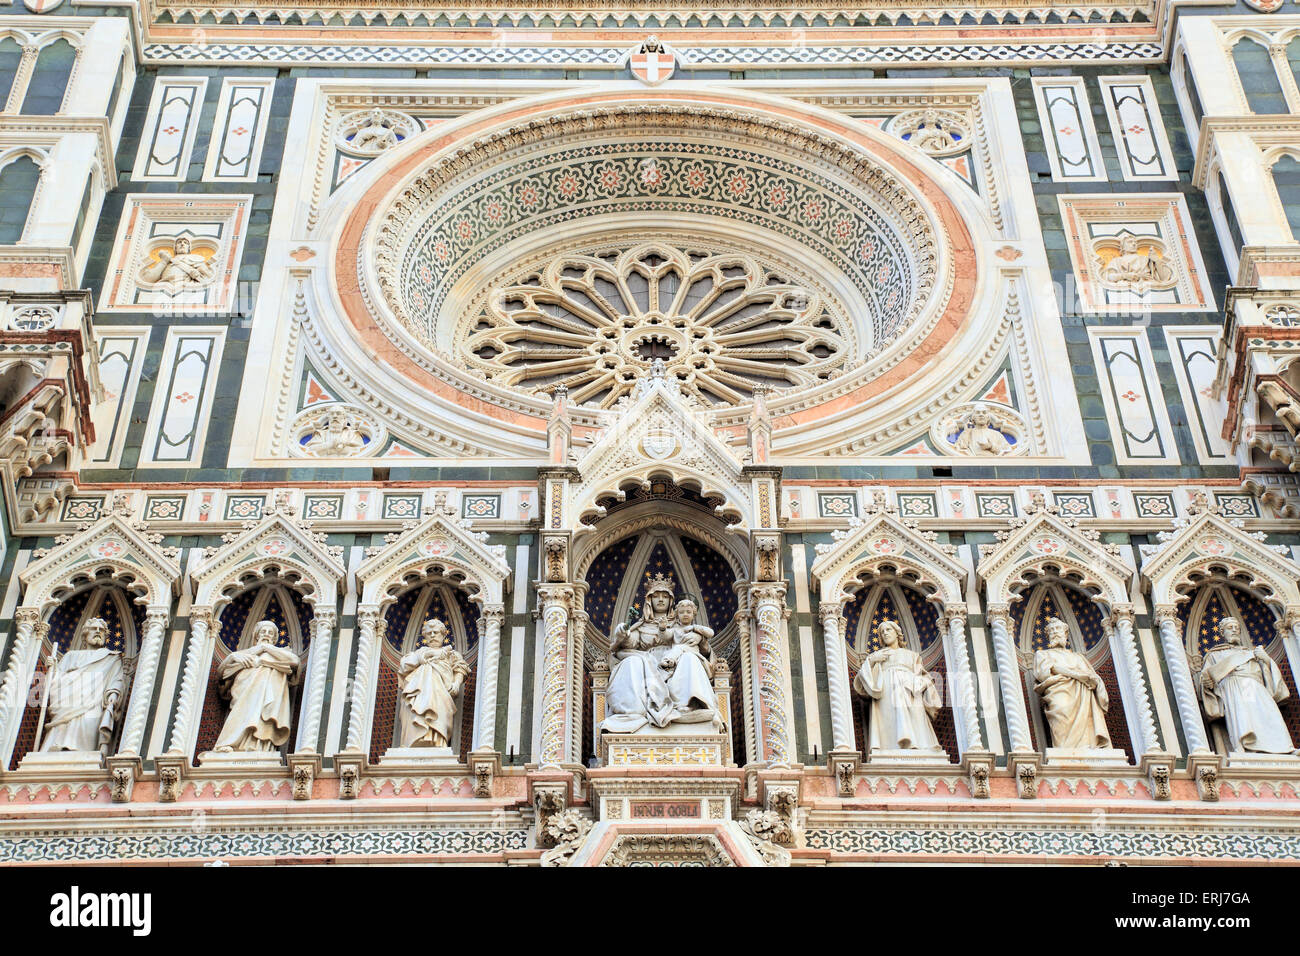 Detalle del Duomo de Florencia, la Catedral de Santa Maria del Fiore, Florencia. Foto de stock